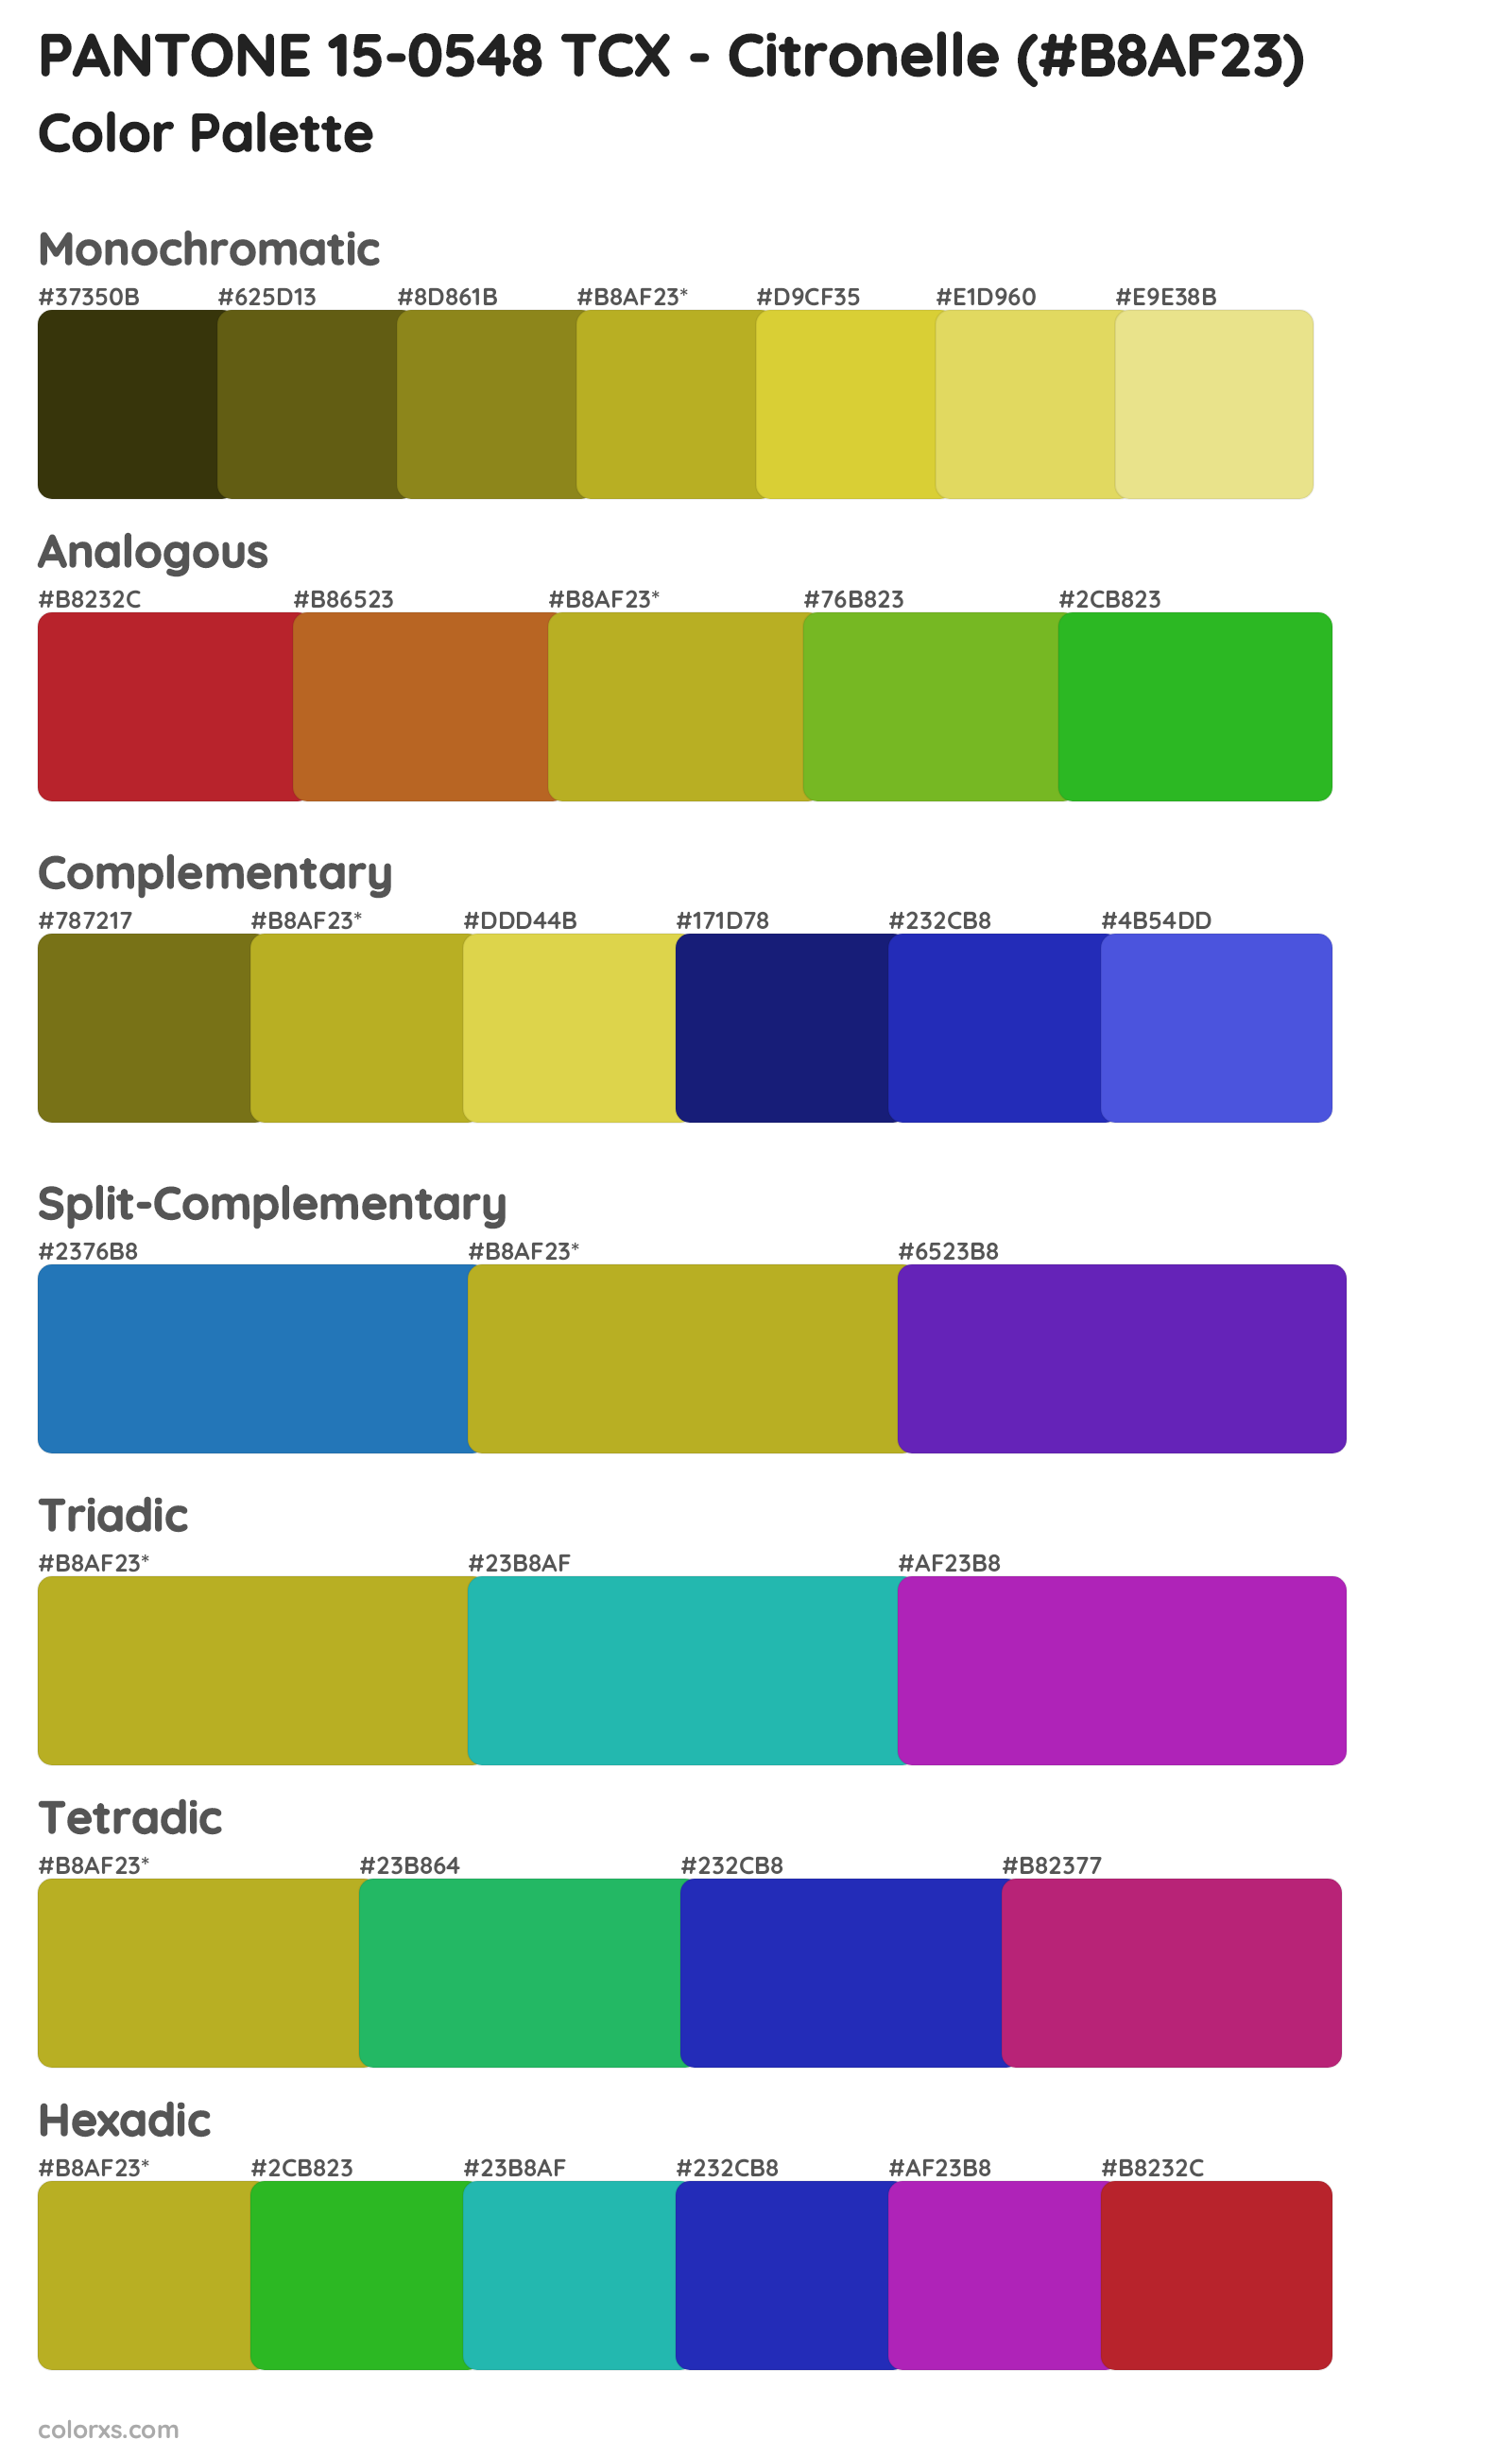 PANTONE 15-0548 TCX - Citronelle Color Scheme Palettes